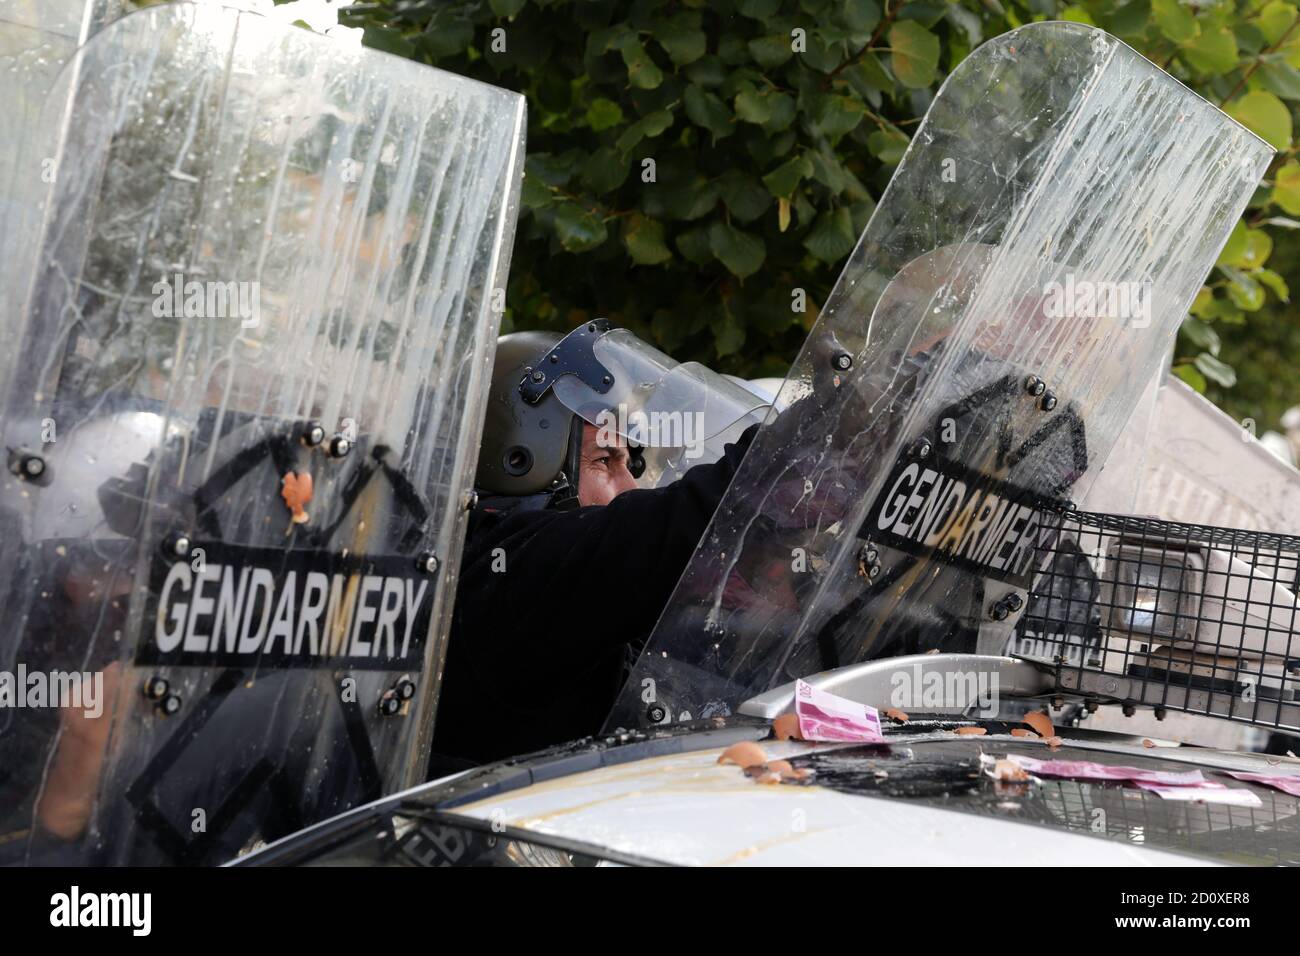 Sofia, Bulgarie - 2 septembre 2020 : les policiers en uniforme de protection de la gendarmerie se cachent derrière leurs boucliers lors d'une communication anti-gouvernementale Banque D'Images